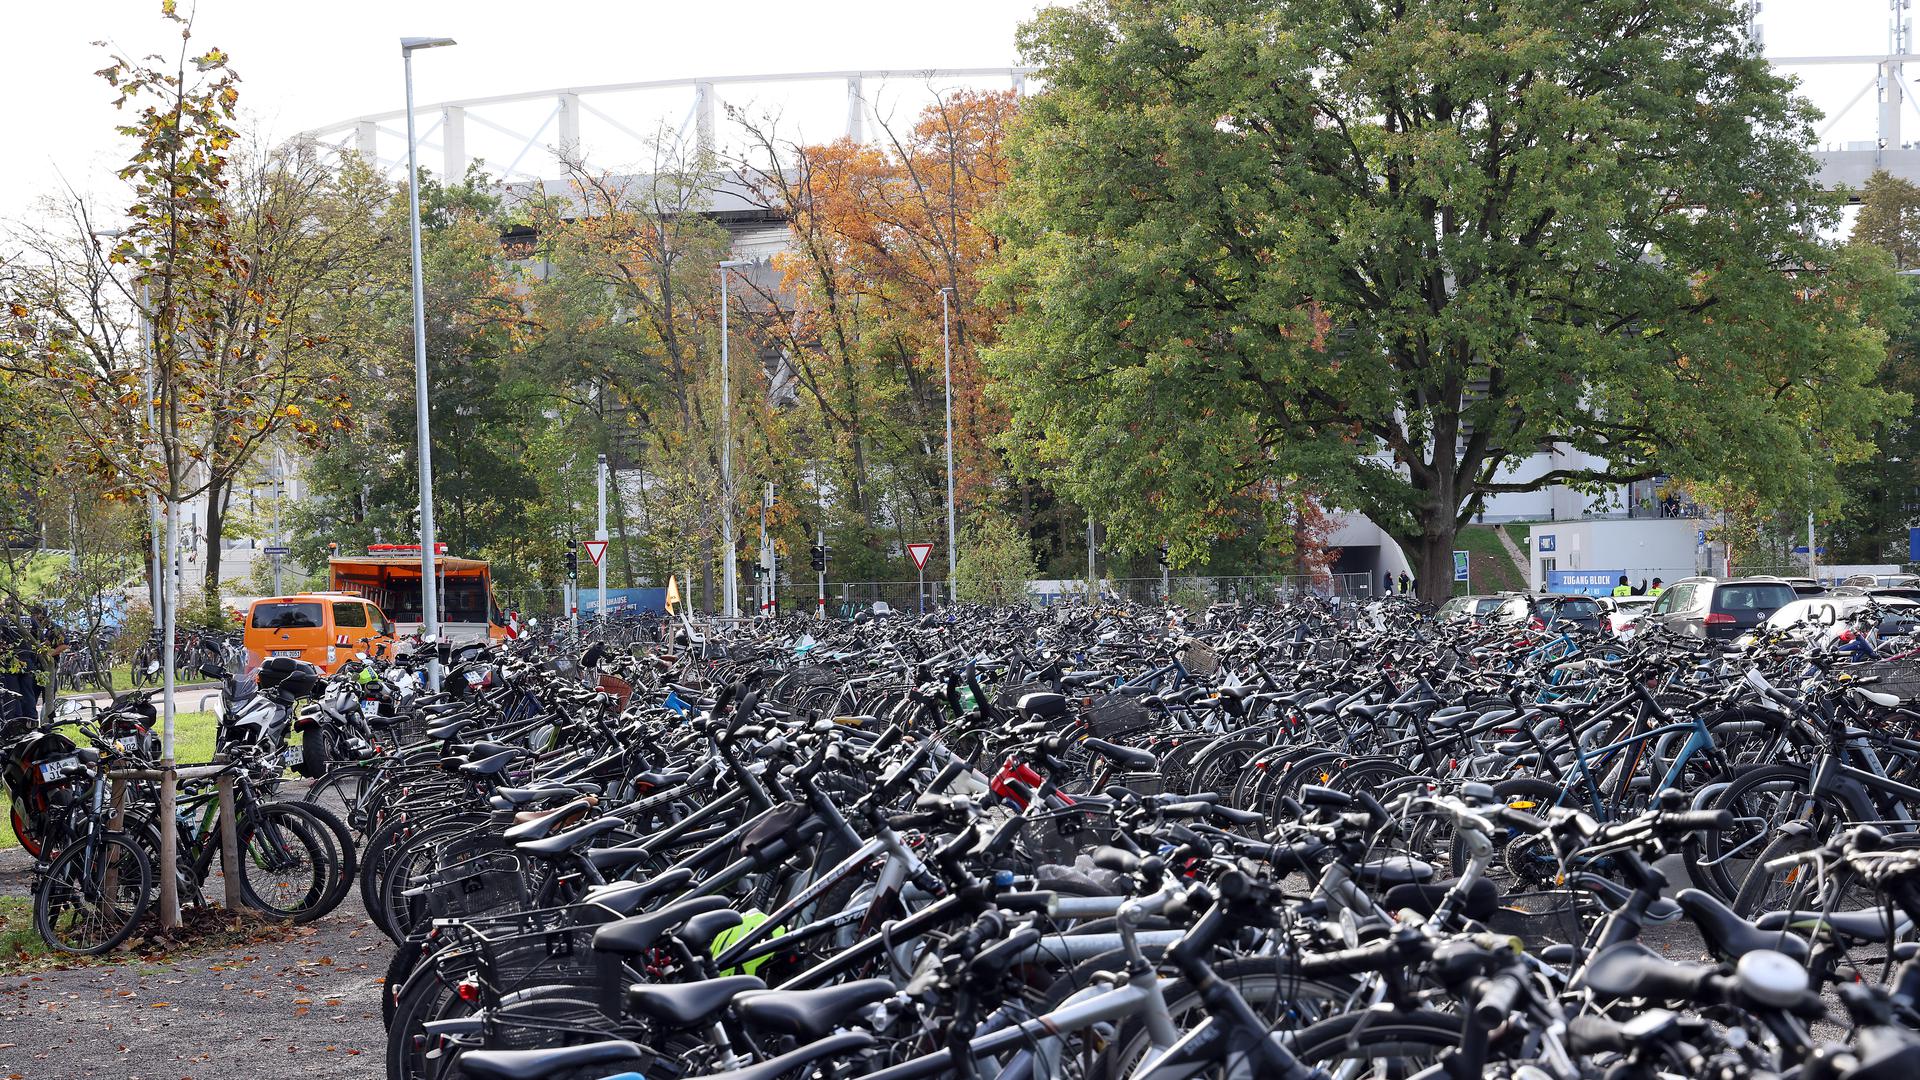 Viel los: Rund 18.000 Fans haben sich am Sonntag auf den Weg ins Wildparkstadion gemacht, um den KSC gegen Fortuna Düsseldorf zu unterstützen. Viele davon waren mit dem Fahrrad unterwegs.